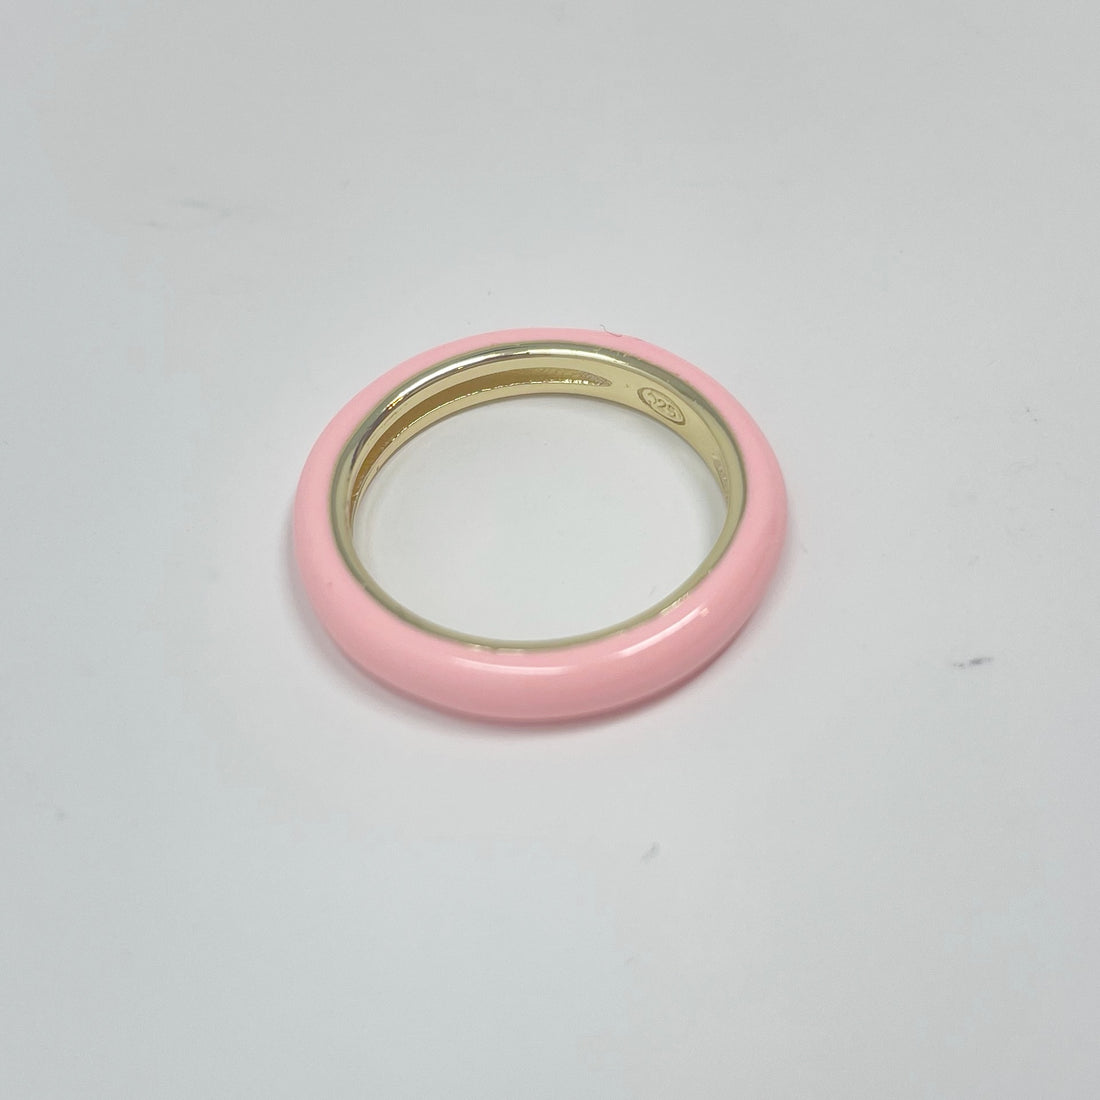 Enamel Ring in Peachy Pink